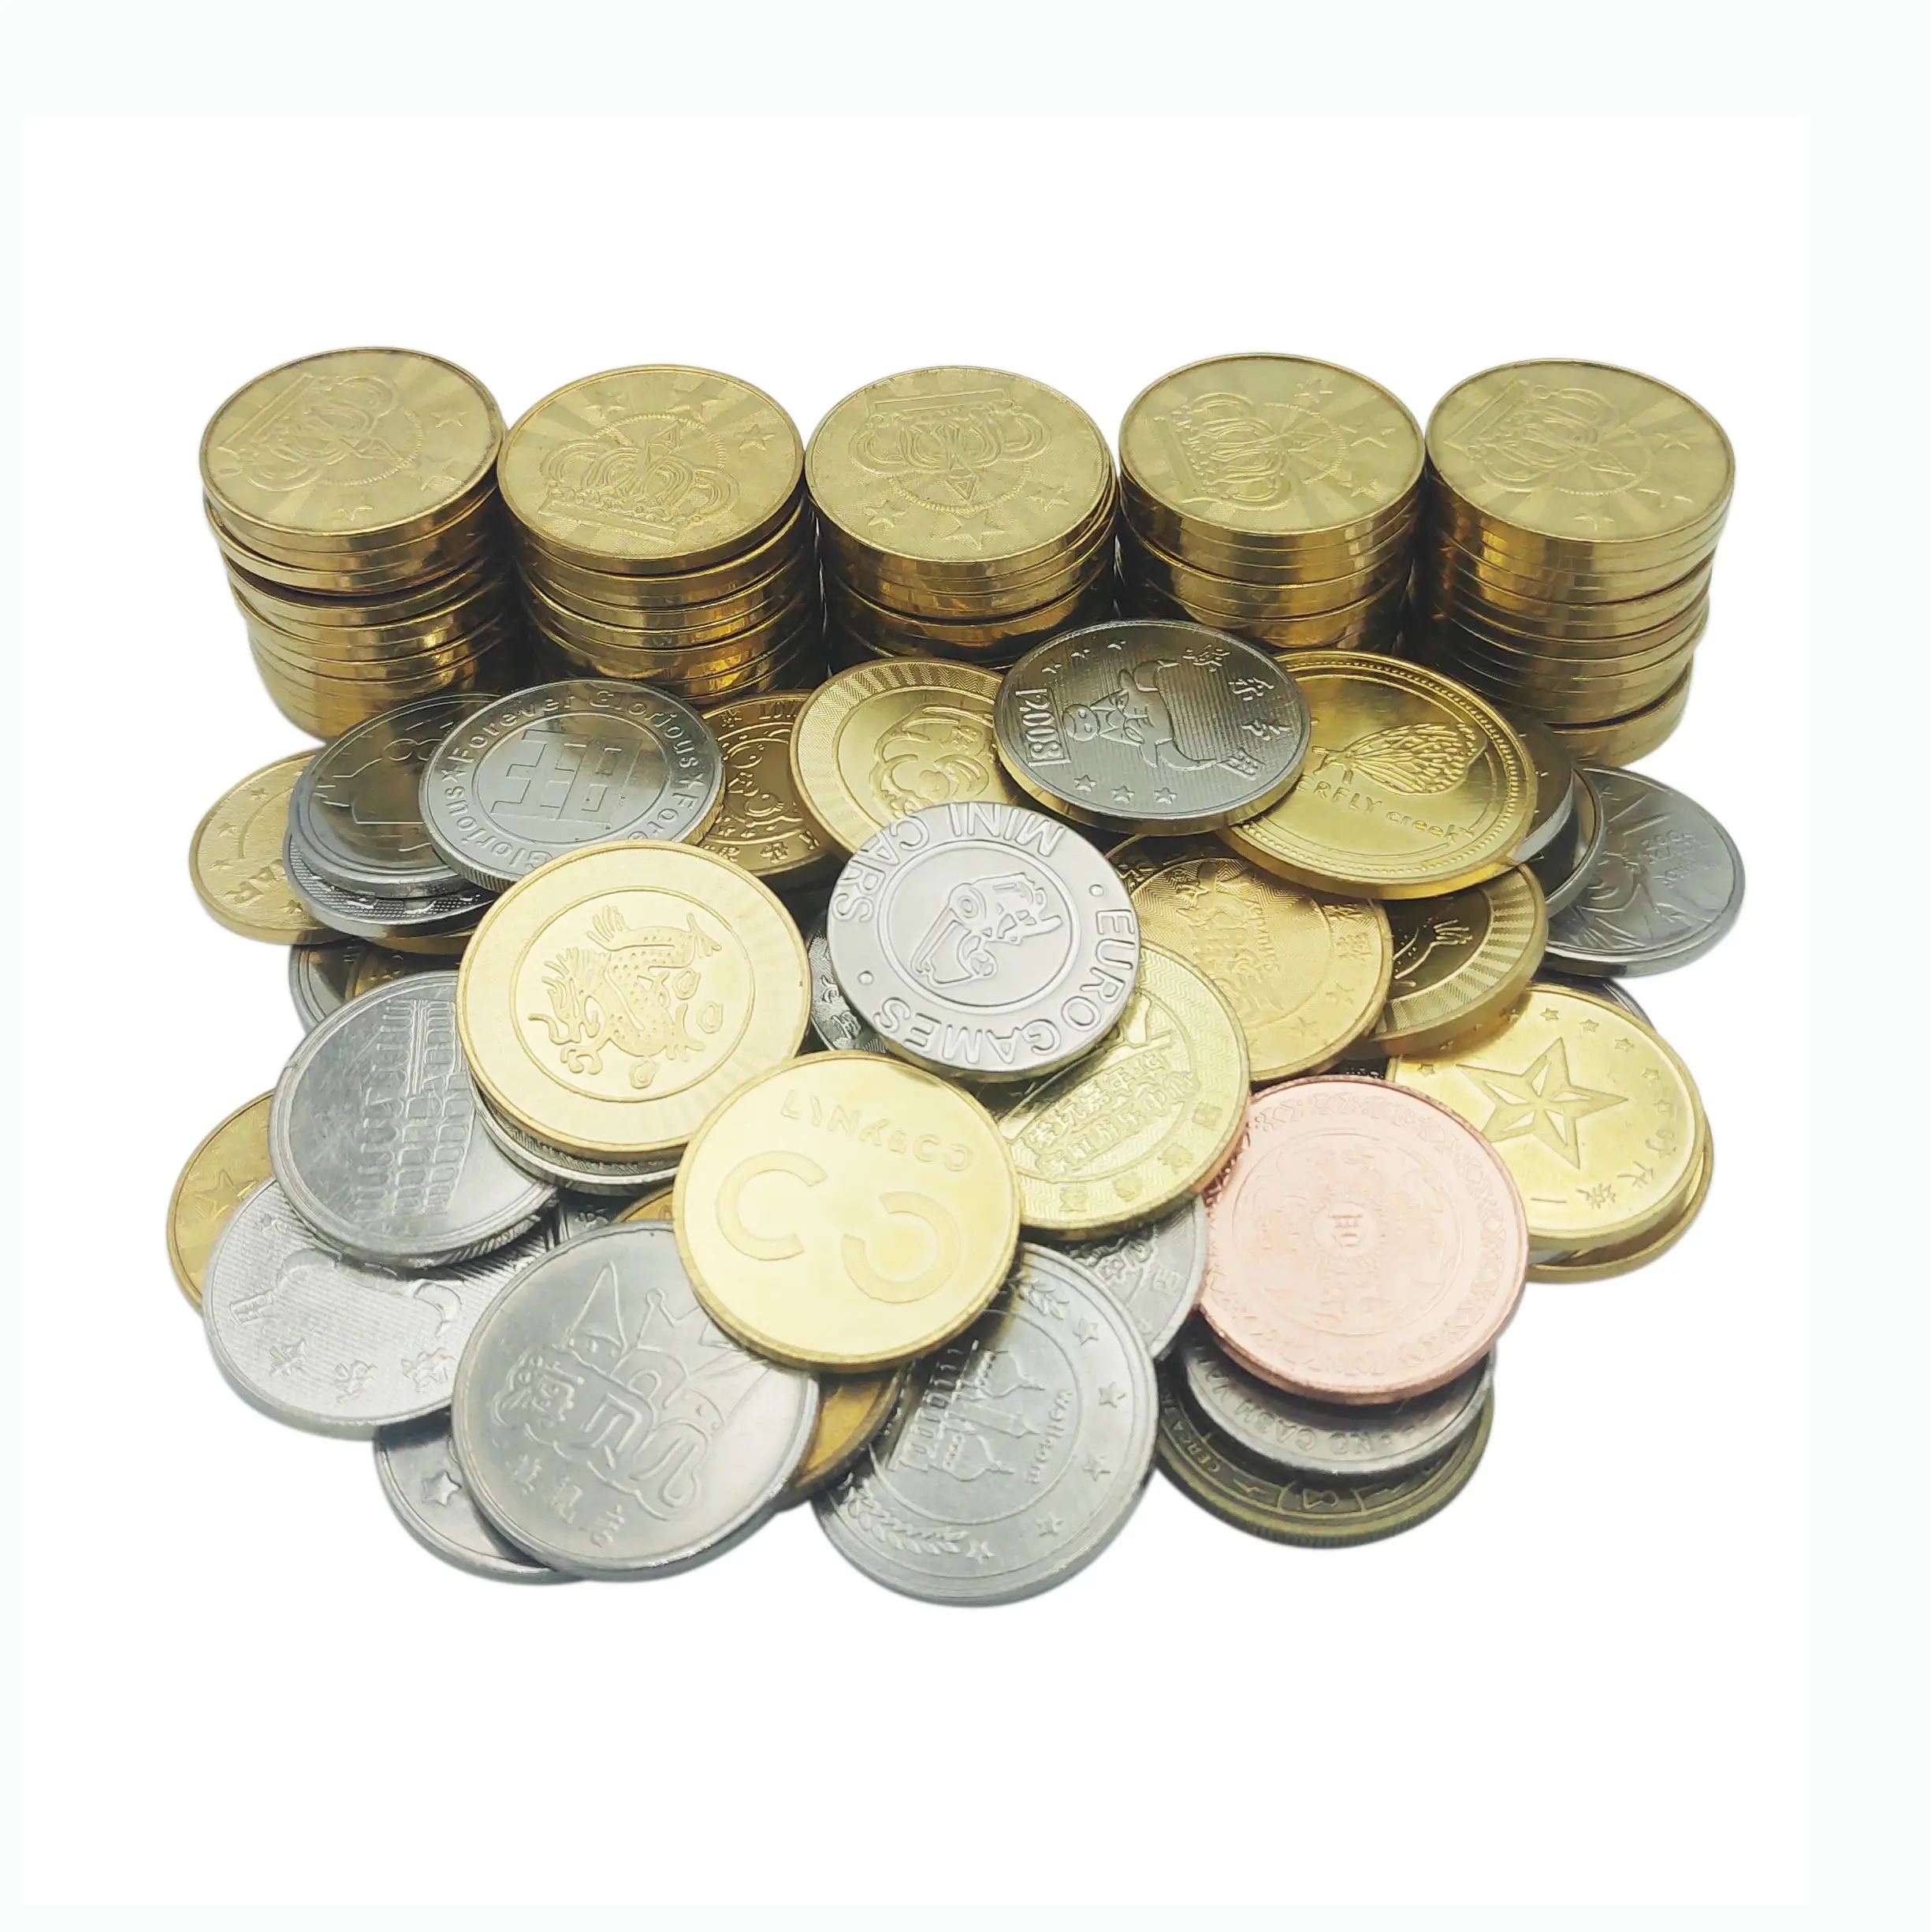 Máquina Expendedora de monedas personalizada, juego de metal, token de juego arcade, monedas, venta al por mayor